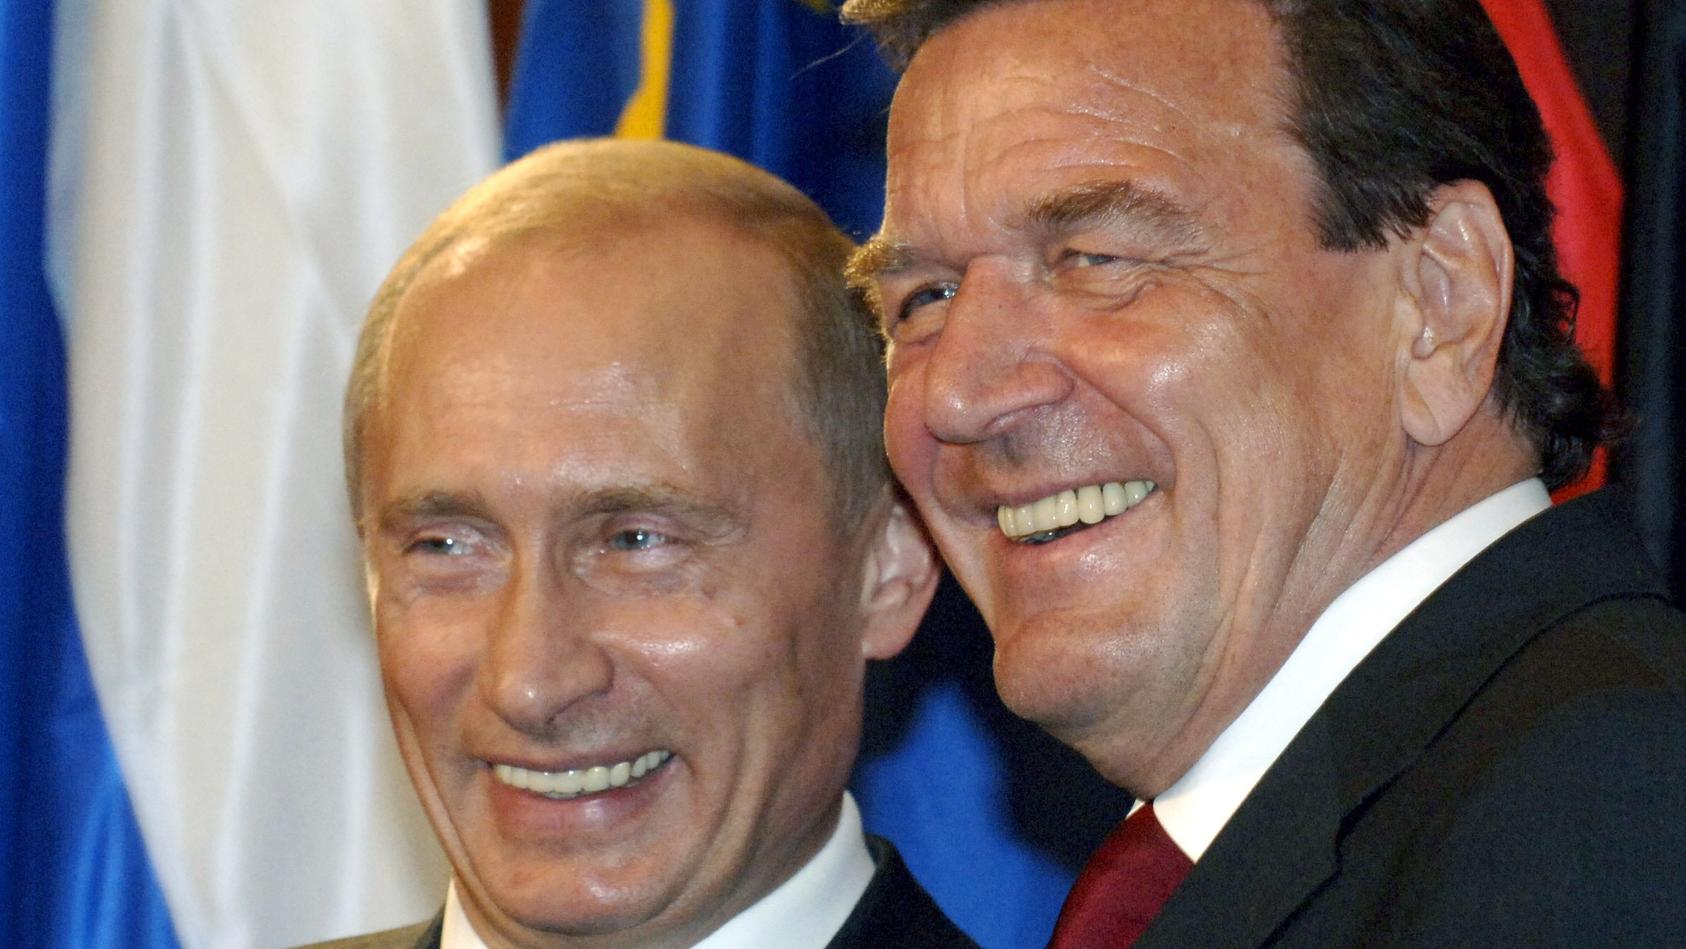 Lachend steht der damalige Bundeskanzler Gerhard Schröder (r) in Berlin während der Vertragsunterzeichnung über den Bau einer Erdgasleitung durch die Ostsee neben Russlands Präsident Wladimir Putin (Archivfoto vom 09.09.2005). Altbundeskanzler Schröd